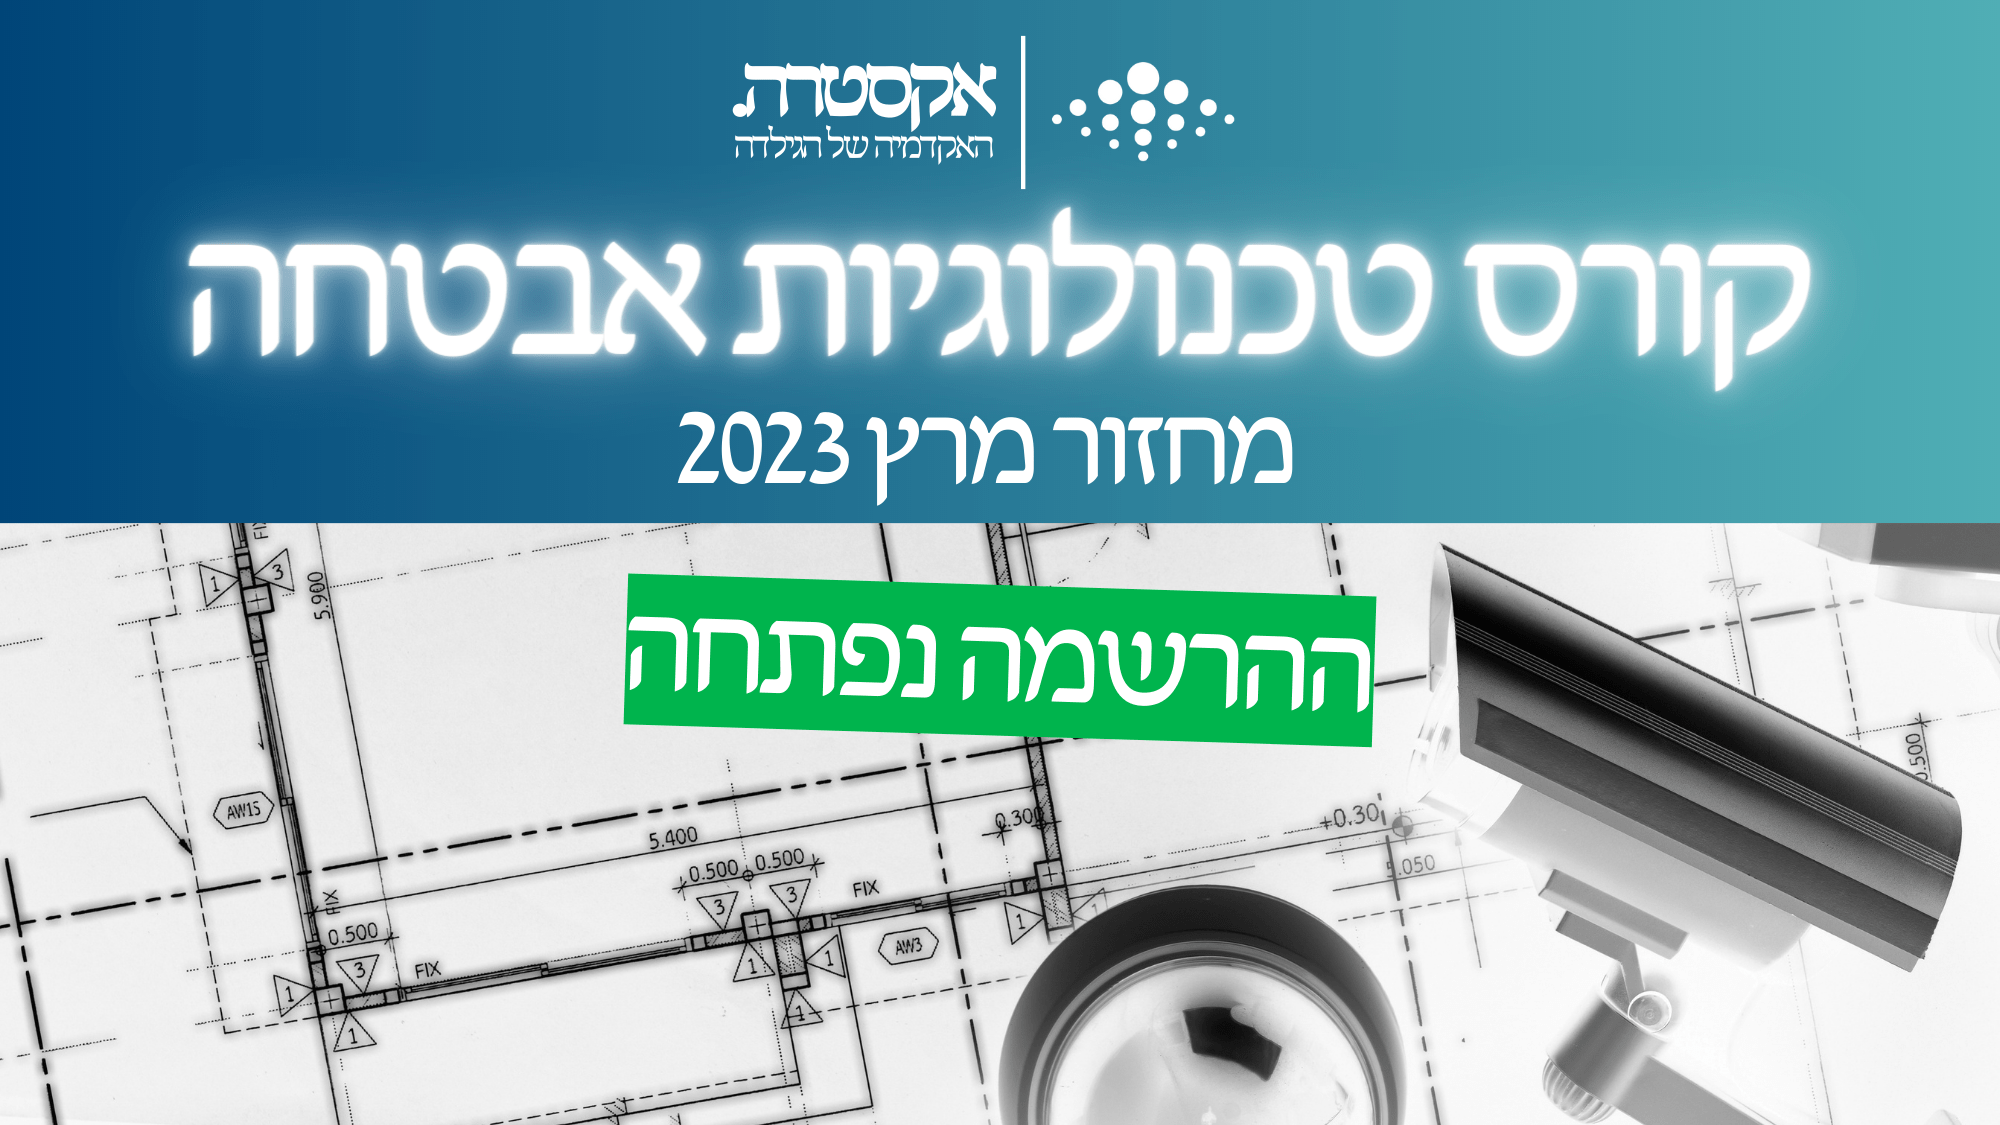 קורס טכנולוגיות אבטחה - מחזור 1 - מרץ 2023 - אקסטרה - האקדמיה של הגילדה - הגילדה - הבית של מנהלי הביטחון בישראל